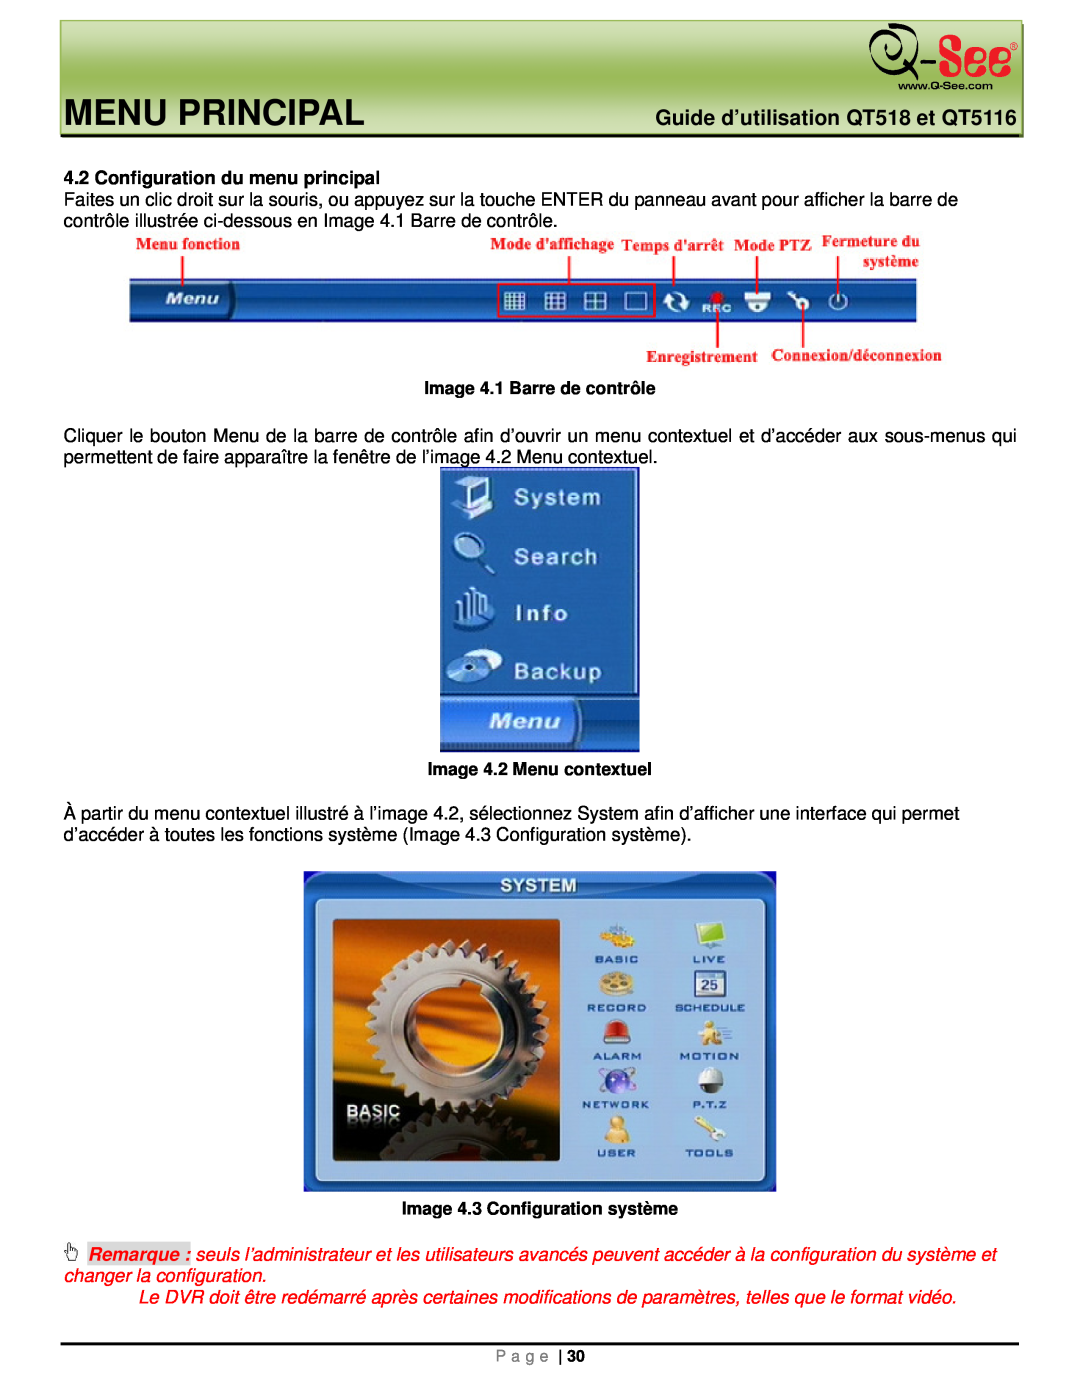 Q-See Menu Principal, Guide d’utilisation QT518 et QT5116, Configuration du menu principal, Image 4.1 Barre de contrôle 